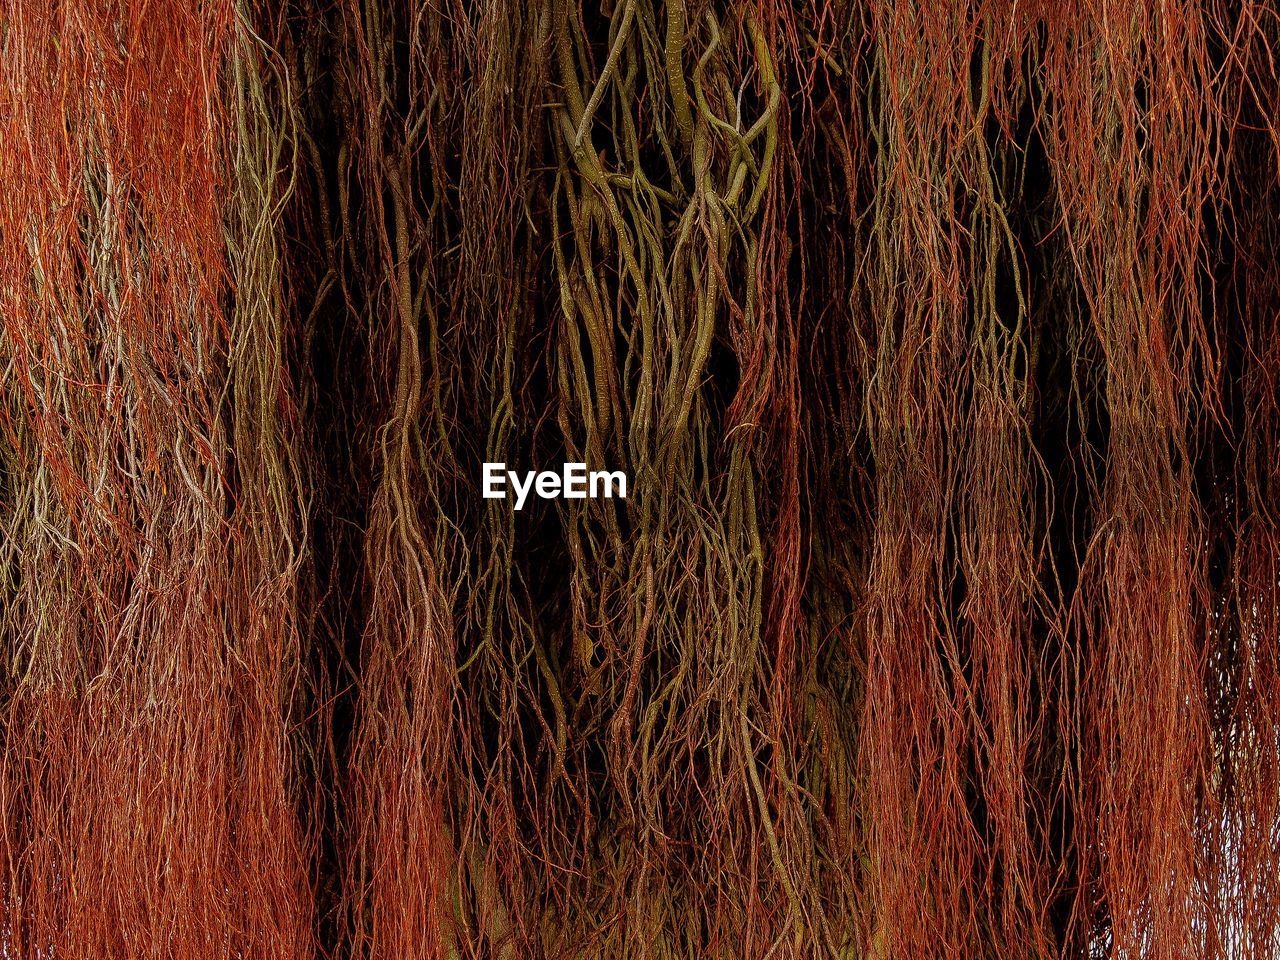 Roots of banyan tree